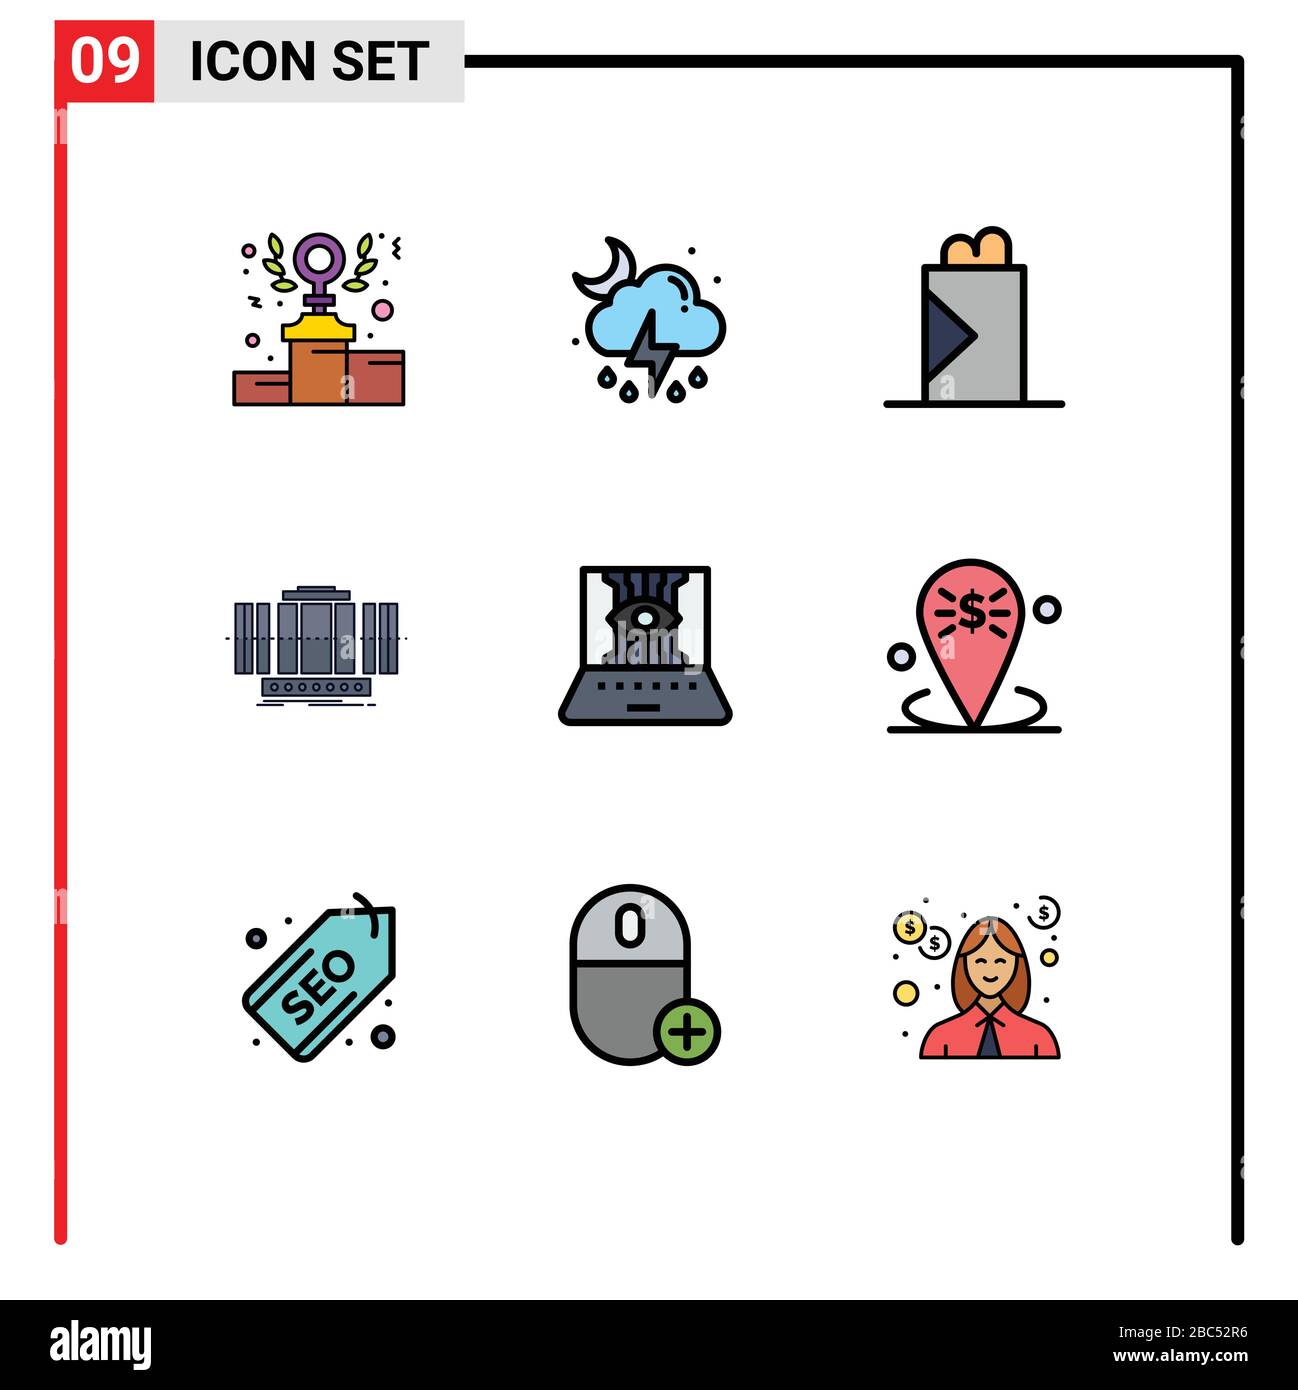 9 icônes créatives signes et symboles modernes des sciences de l'informatique, de la technologie, de la restauration rapide, du vent, des éléments de conception vectorielle éditable vertical Illustration de Vecteur